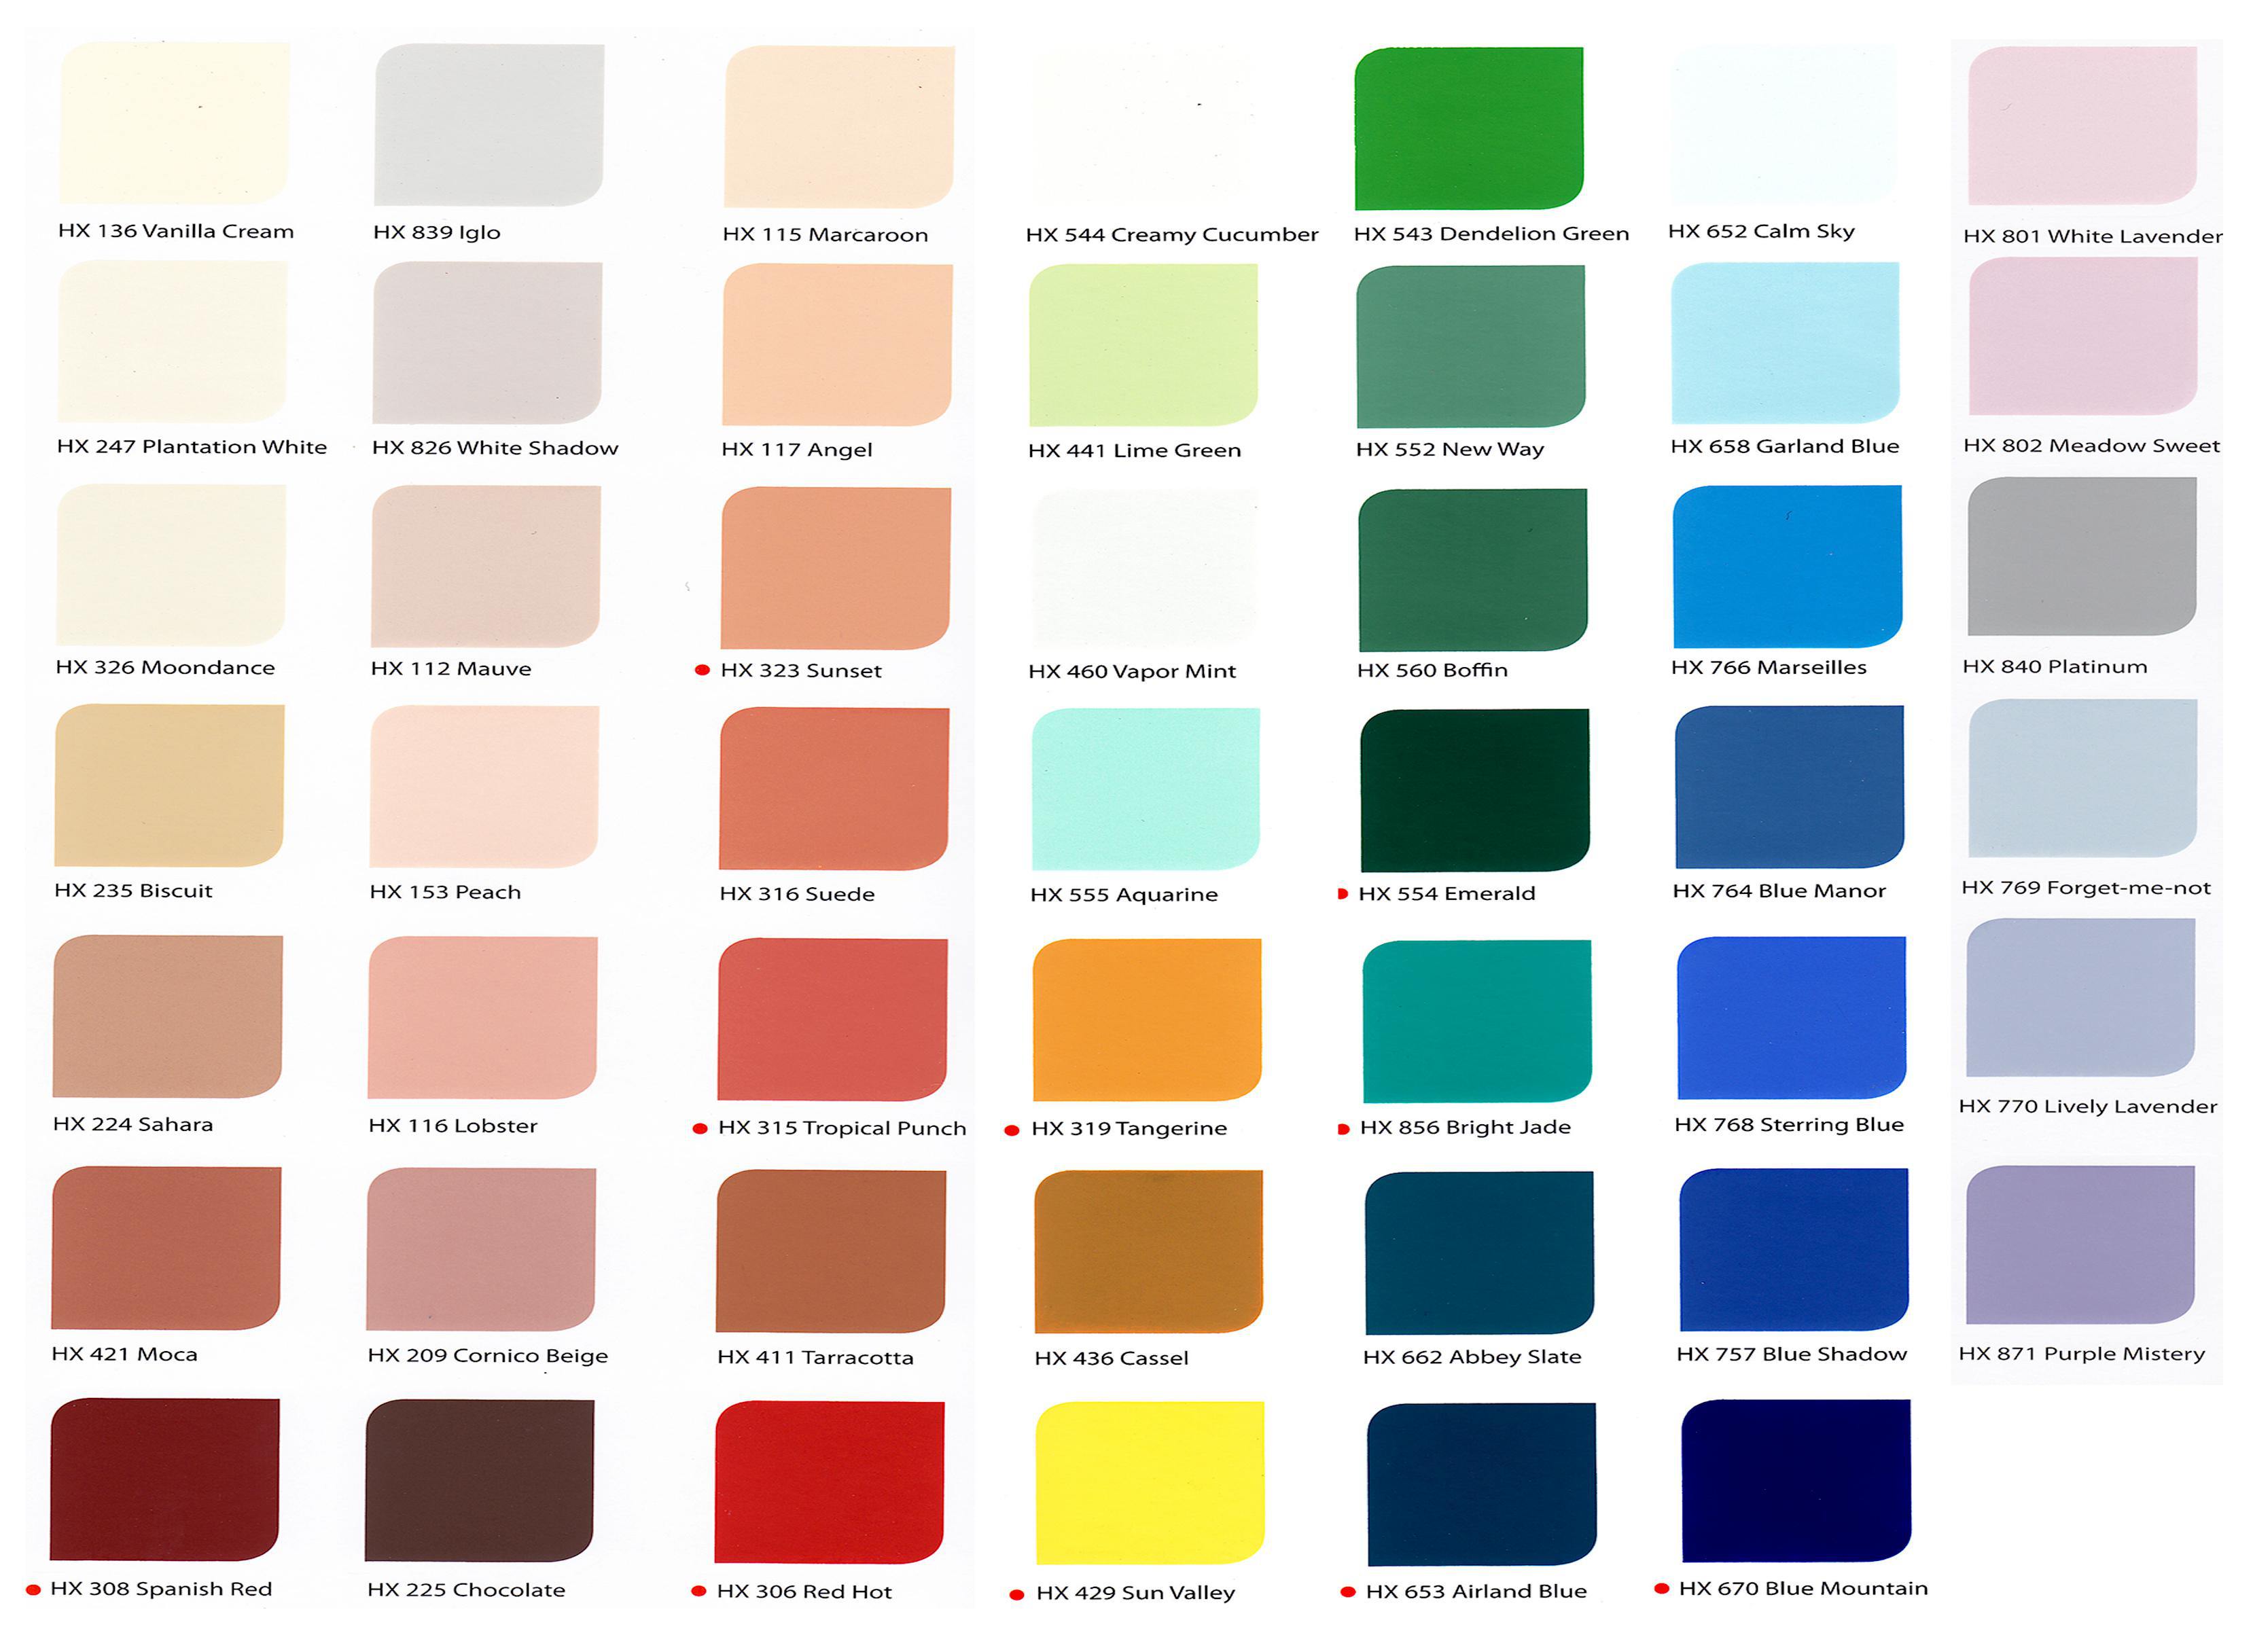 Tải ngay bảng màu sơn ngoại thất Hitex Nippon để tìm ra sắc màu hoàn hảo cho ngôi nhà của bạn. Với chất lượng tuyệt vời và khả năng chịu thời tiết tốt, Hitex của Nippon là sự lựa chọn đáng tin cậy cho bề mặt ngoài của ngôi nhà bạn.